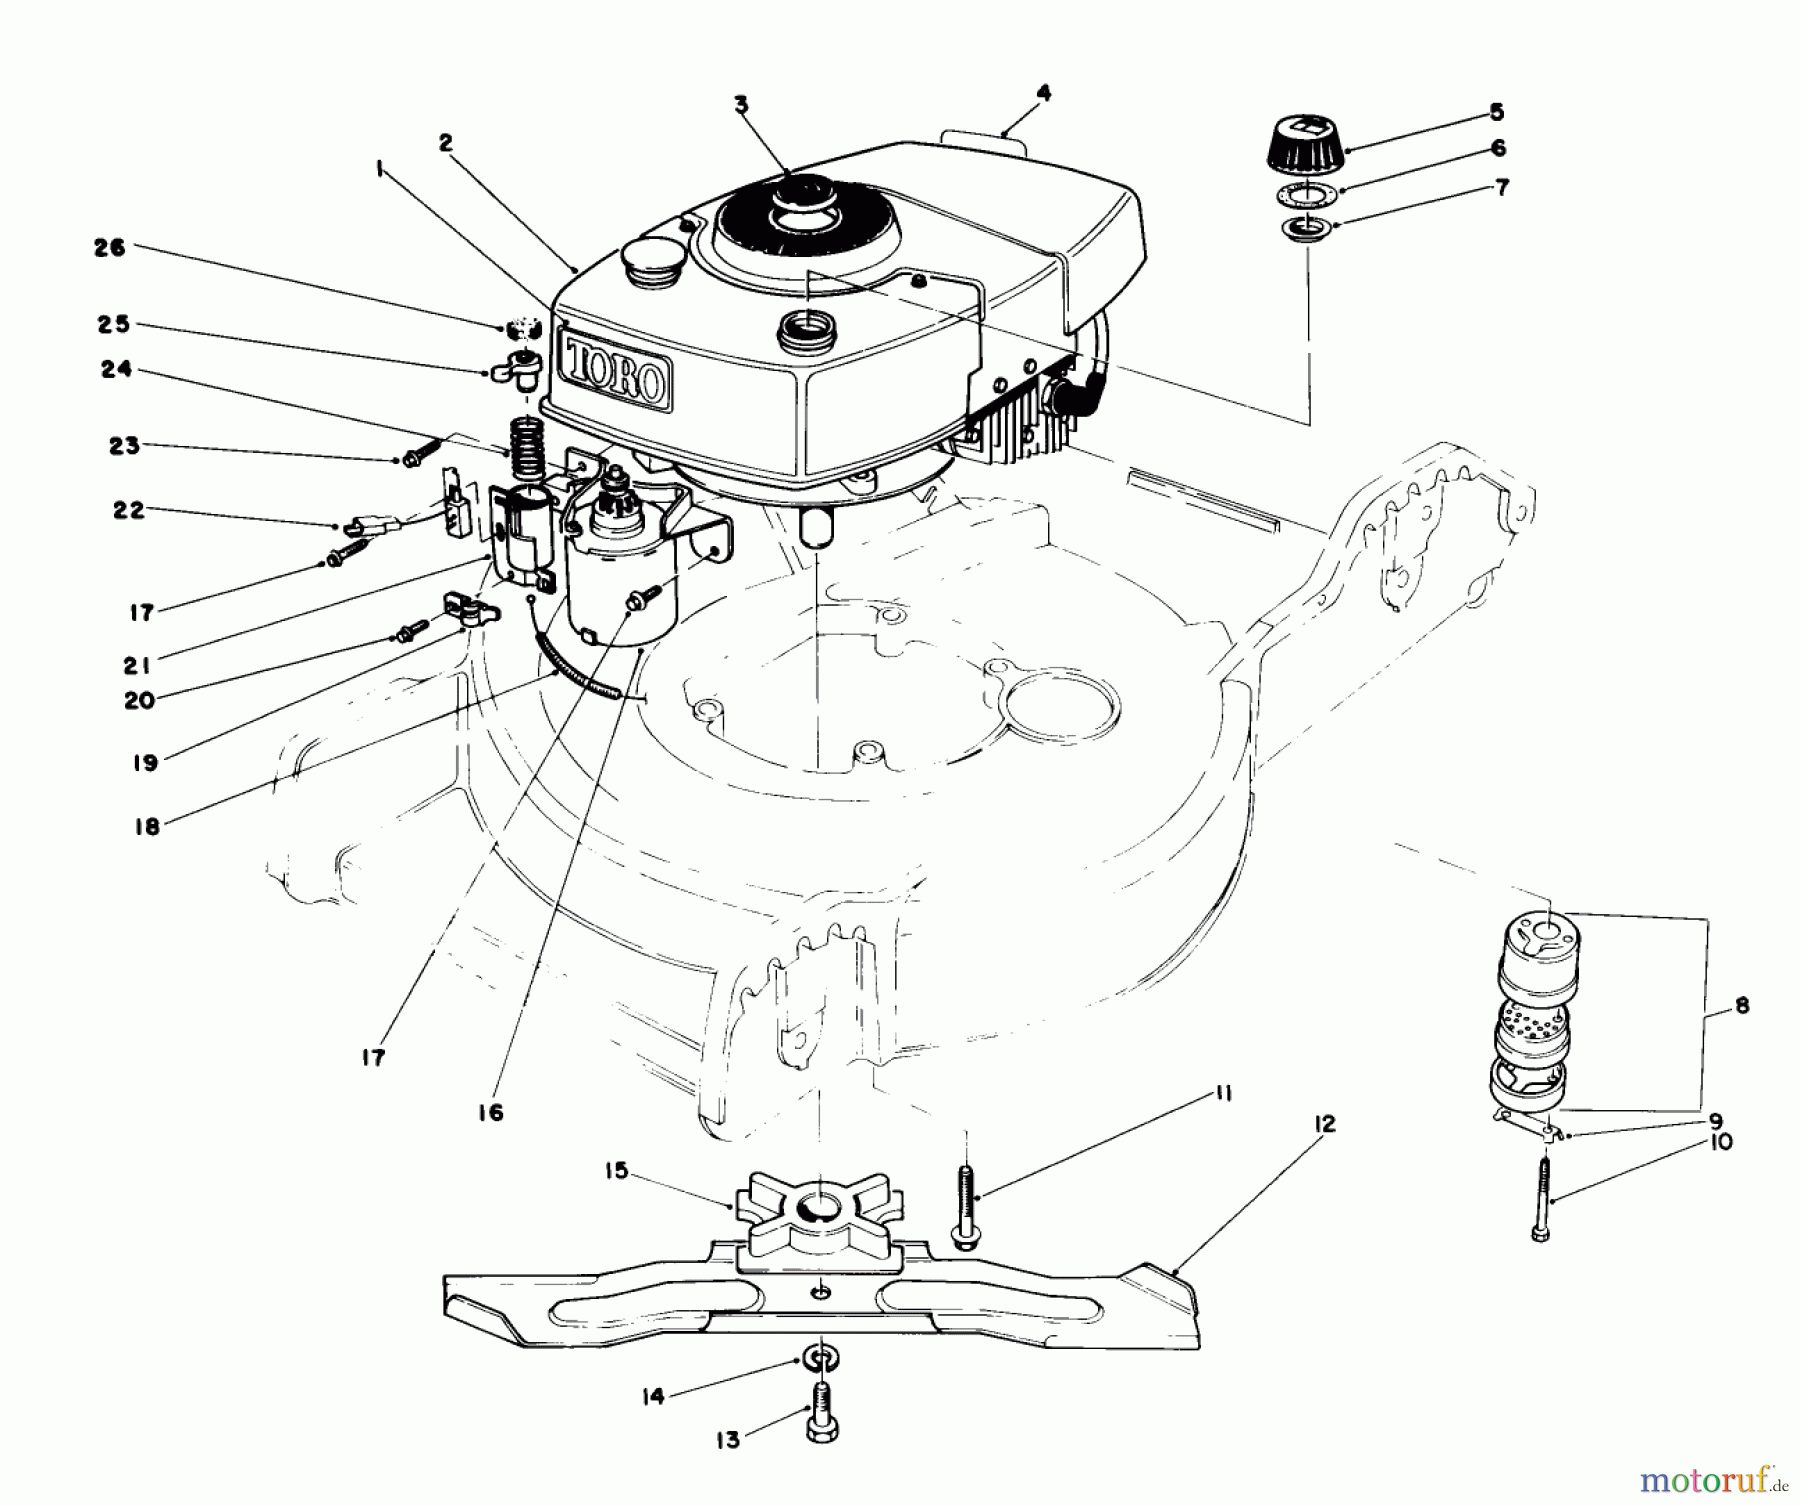  Toro Neu Mowers, Walk-Behind Seite 1 20574 - Toro Lawnmower, 1987 (7000001-7999999) ENGINE ASSEMBLY